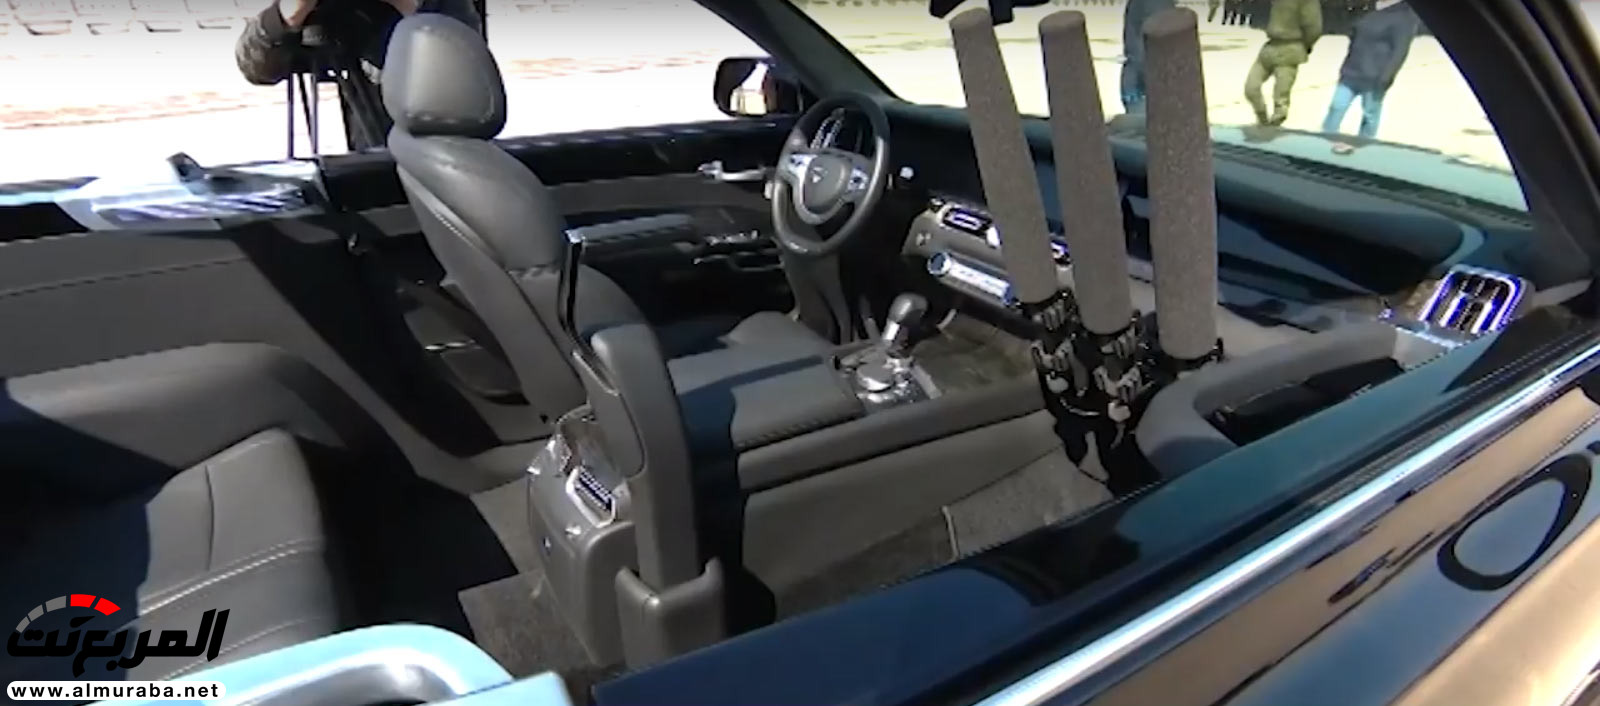 "بالفيديو" سيارة اوروس كشف الروسية تعتقد أنها منافسة رولزرويس داون 5